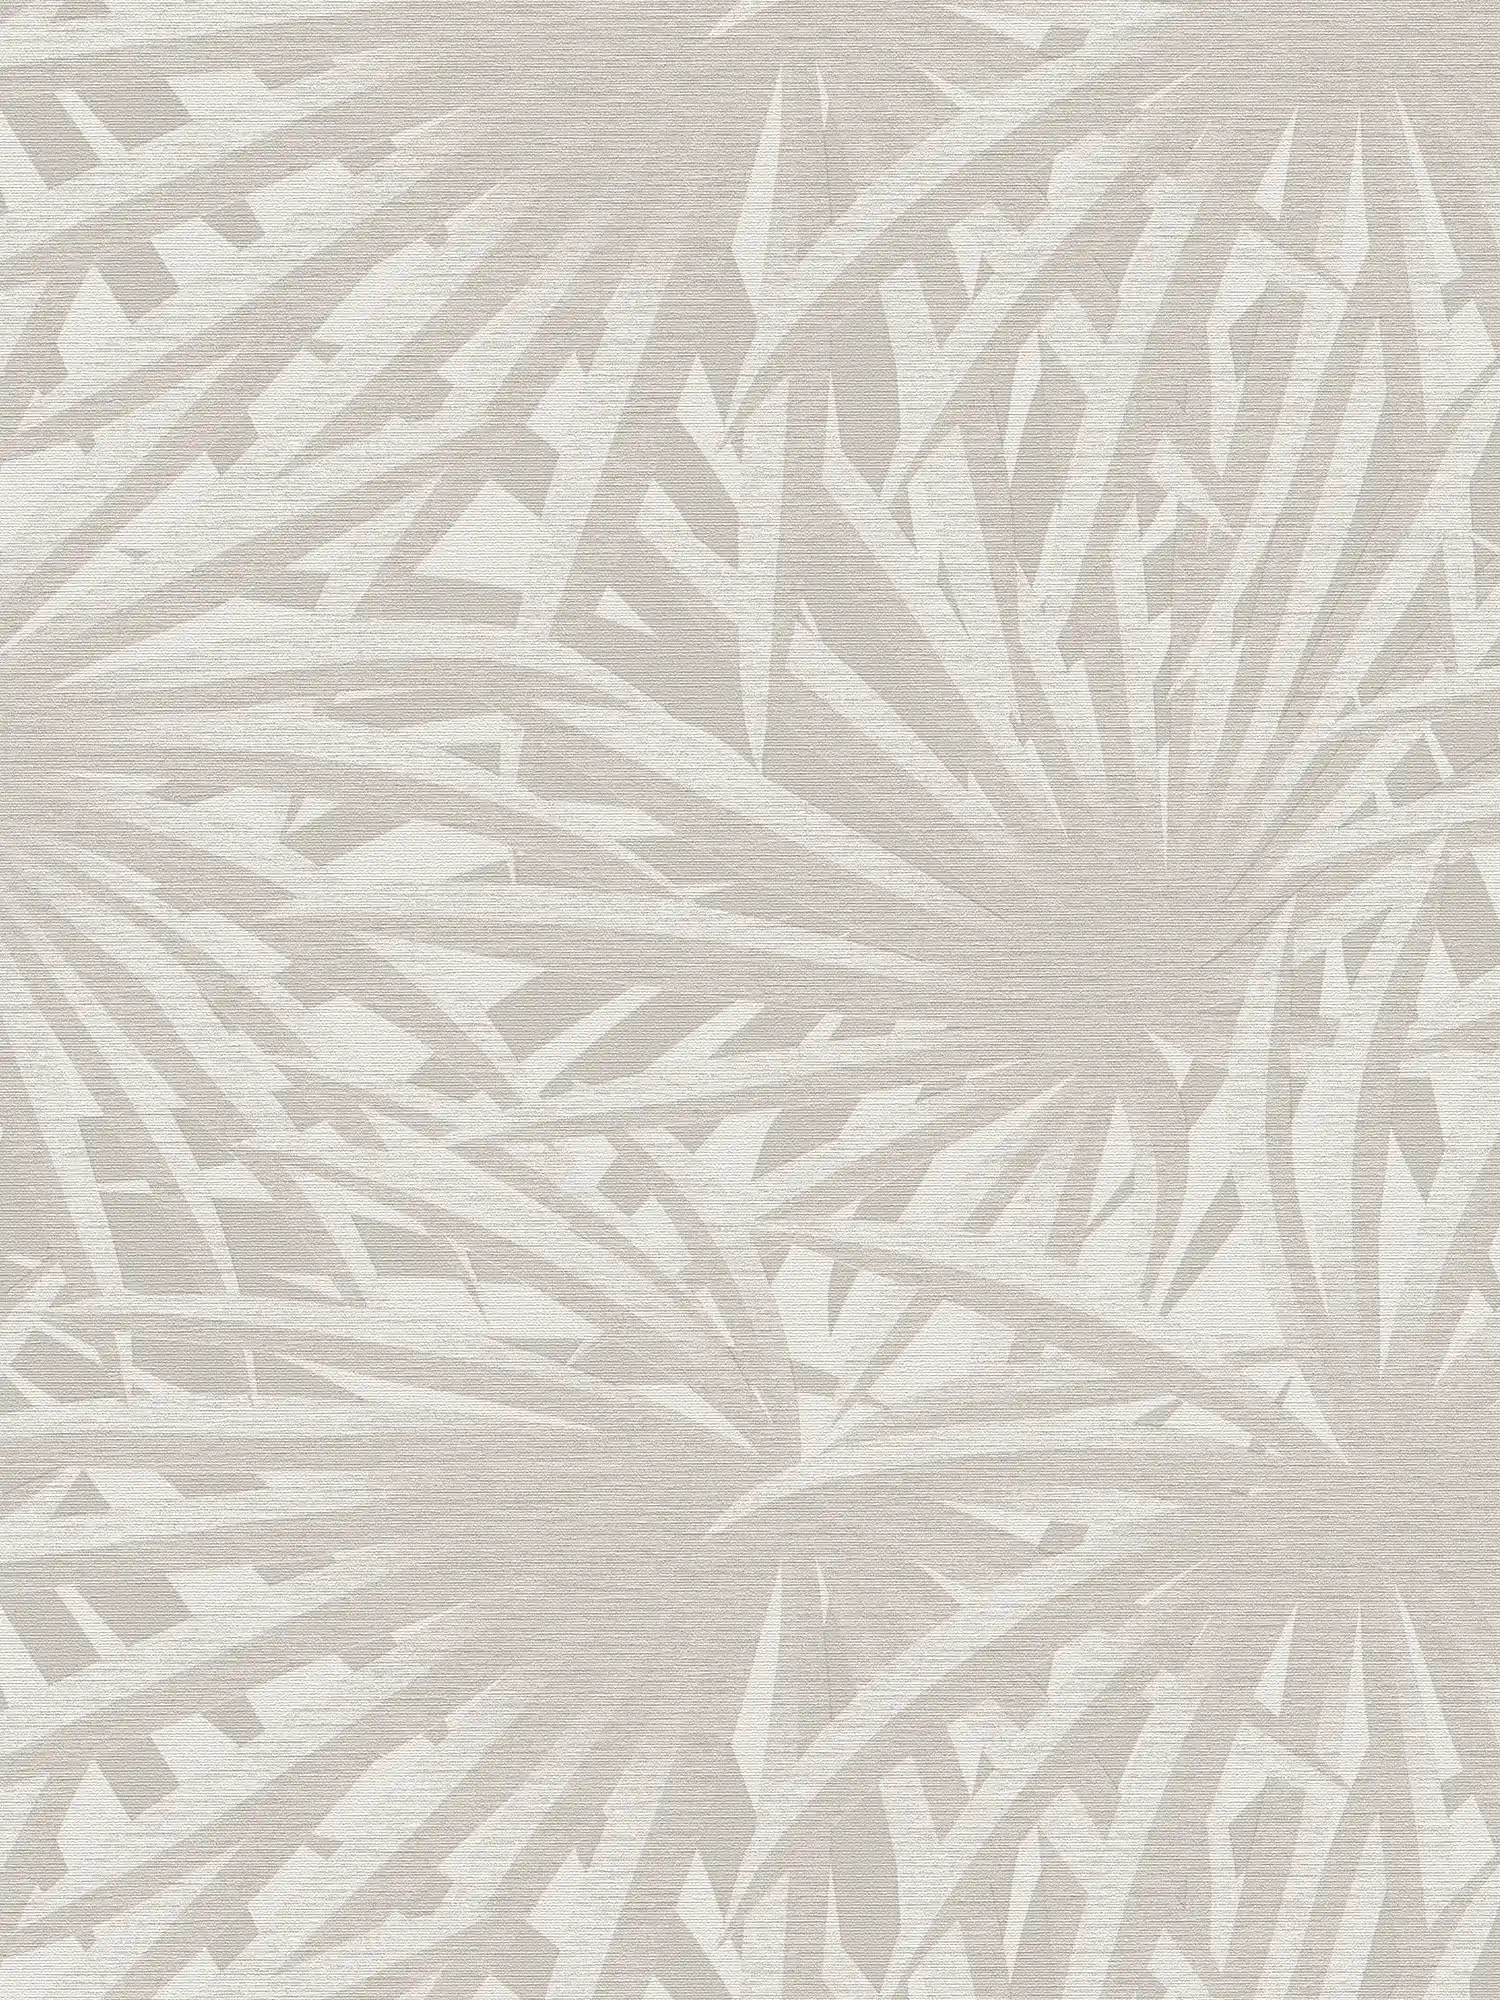         Vliestapete Blätterdesign mit Metallic-Glanz – Grau, Metallic, Weiß
    